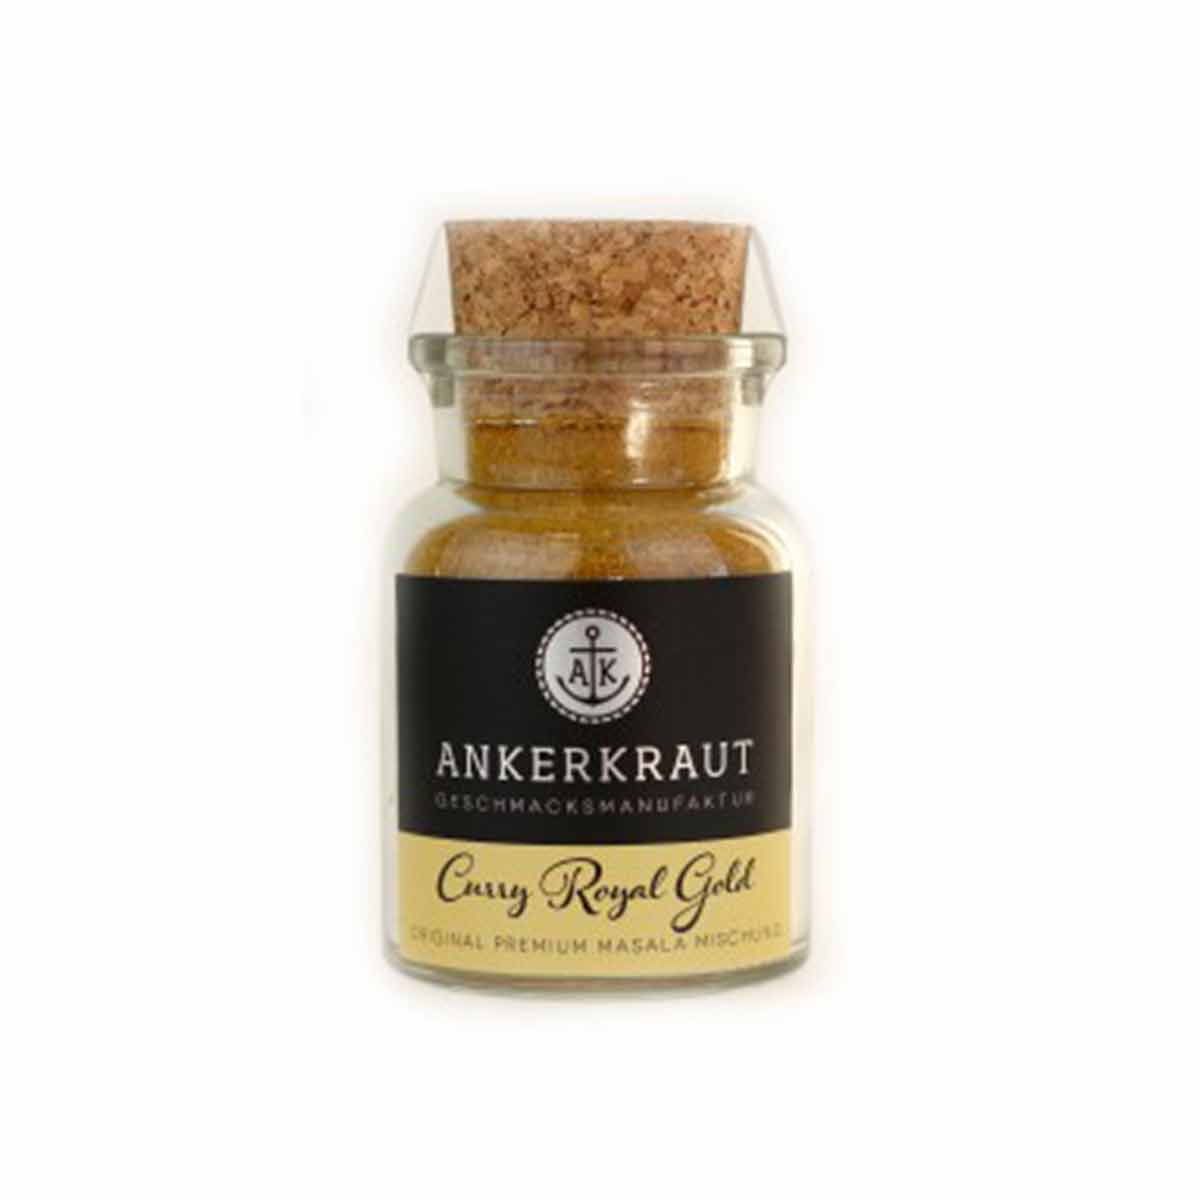 Ankerkraut Curry Royal Gold 80g